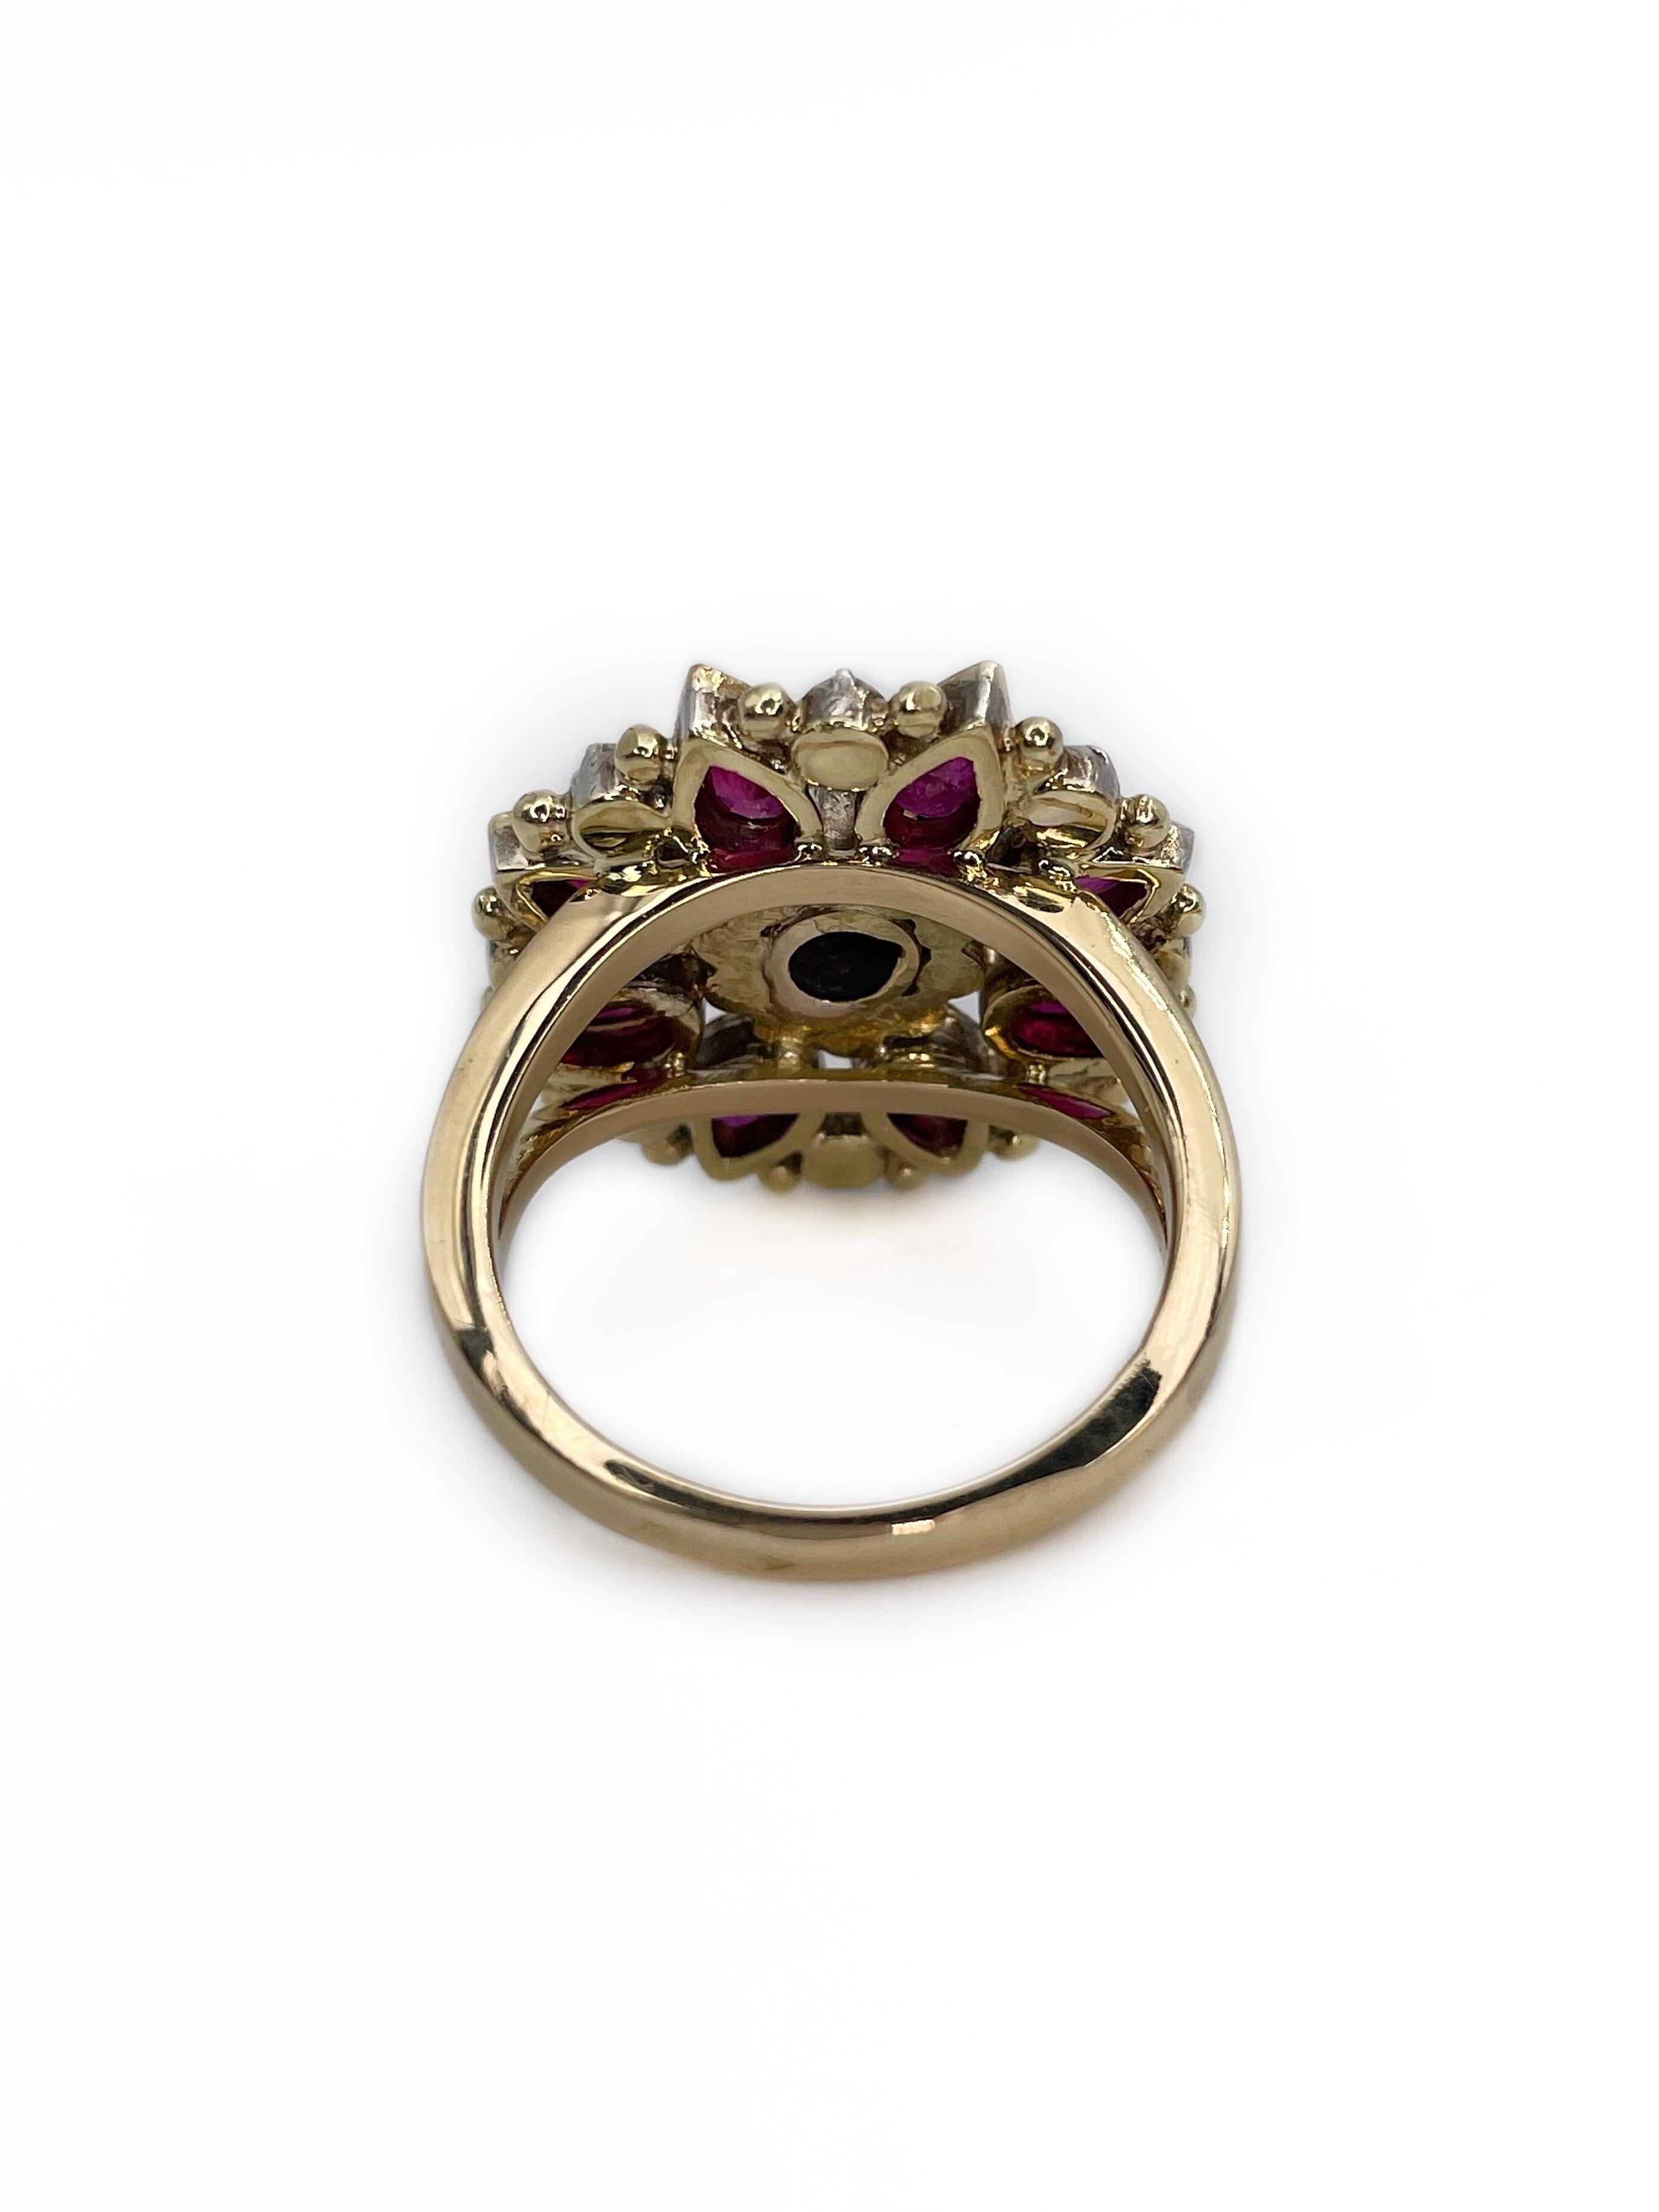 Women's Victorian 18 Karat Gold 2.14 Carat Ruby 0.27 Carat Rose Cut Diamond Ring